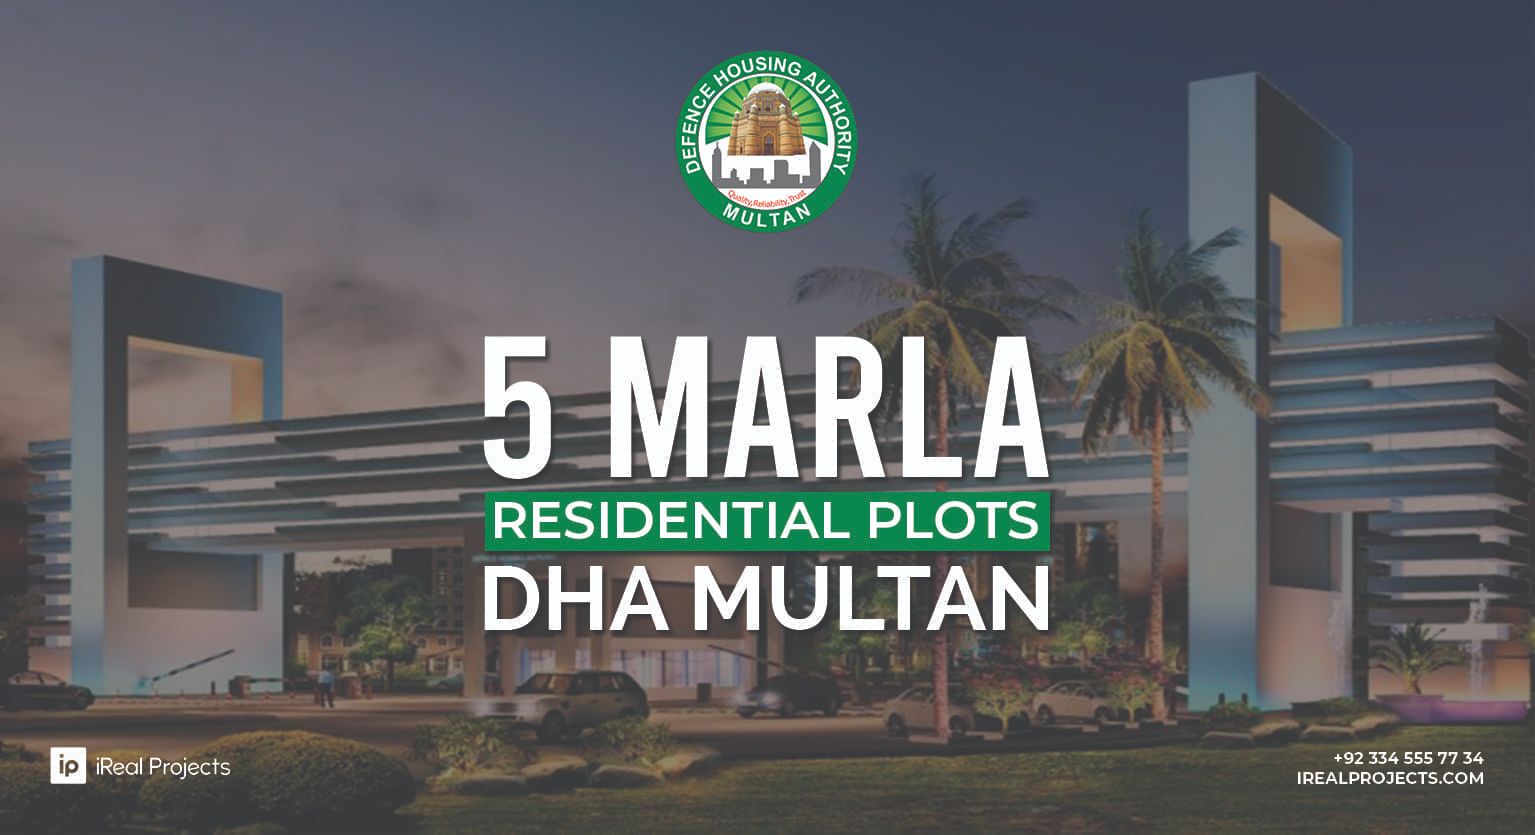 5 Marla Plots for sale in DHA Multan